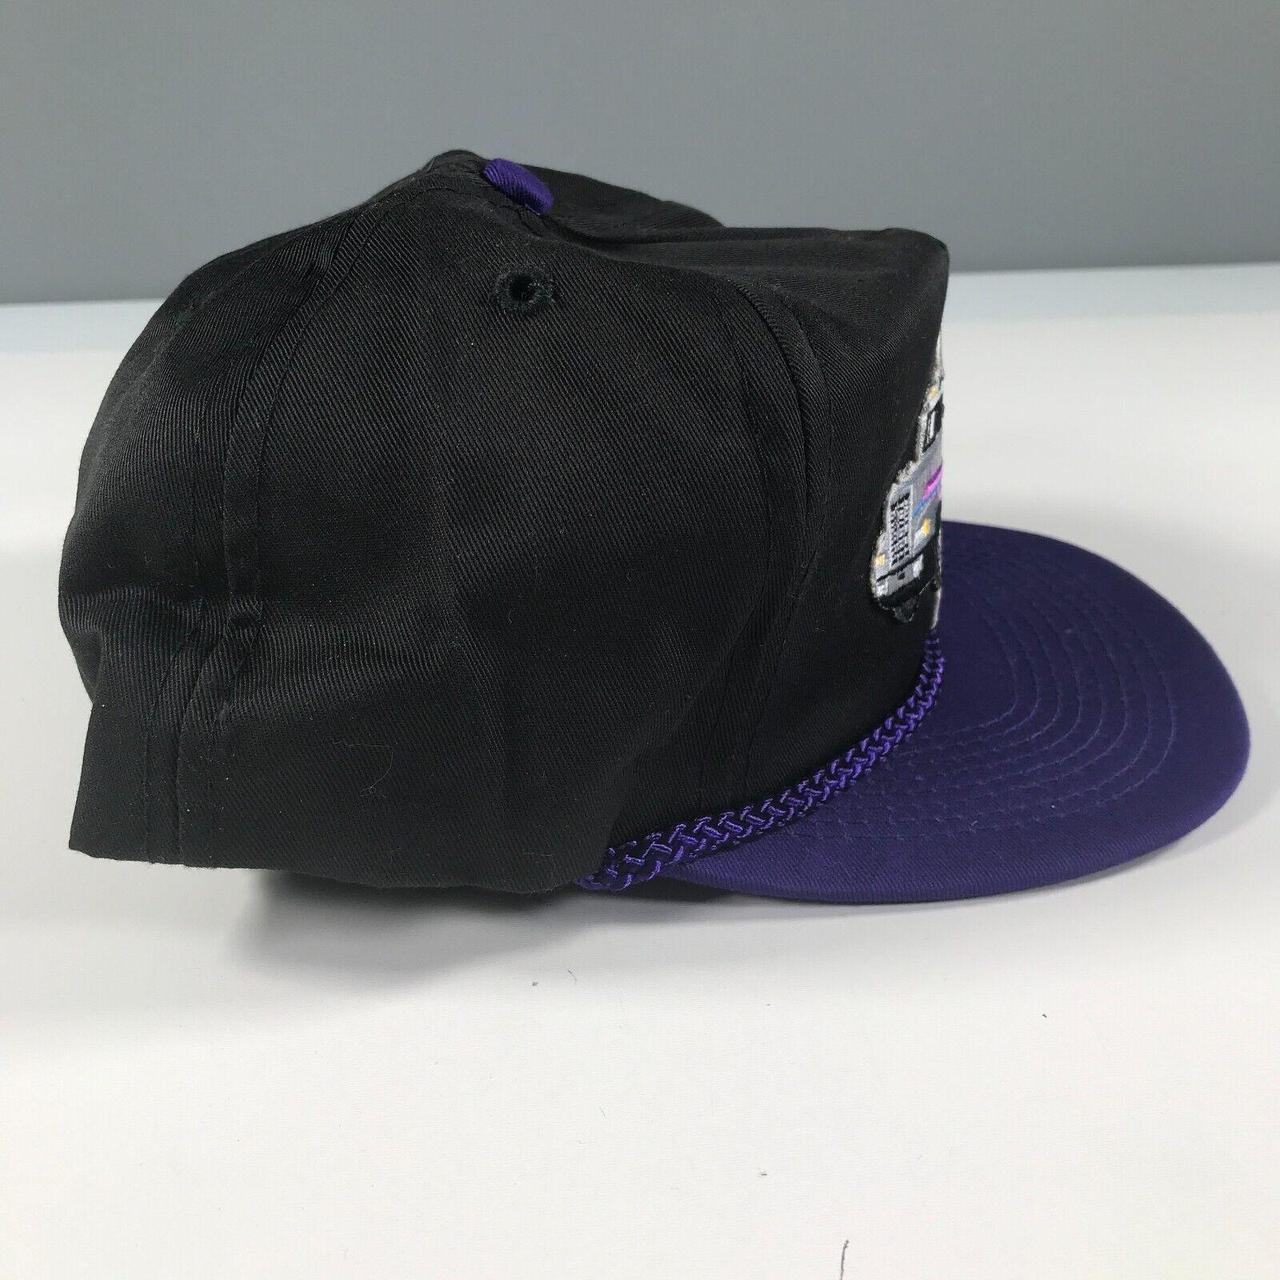 Lotto Men's Purple and Black Hat (3)